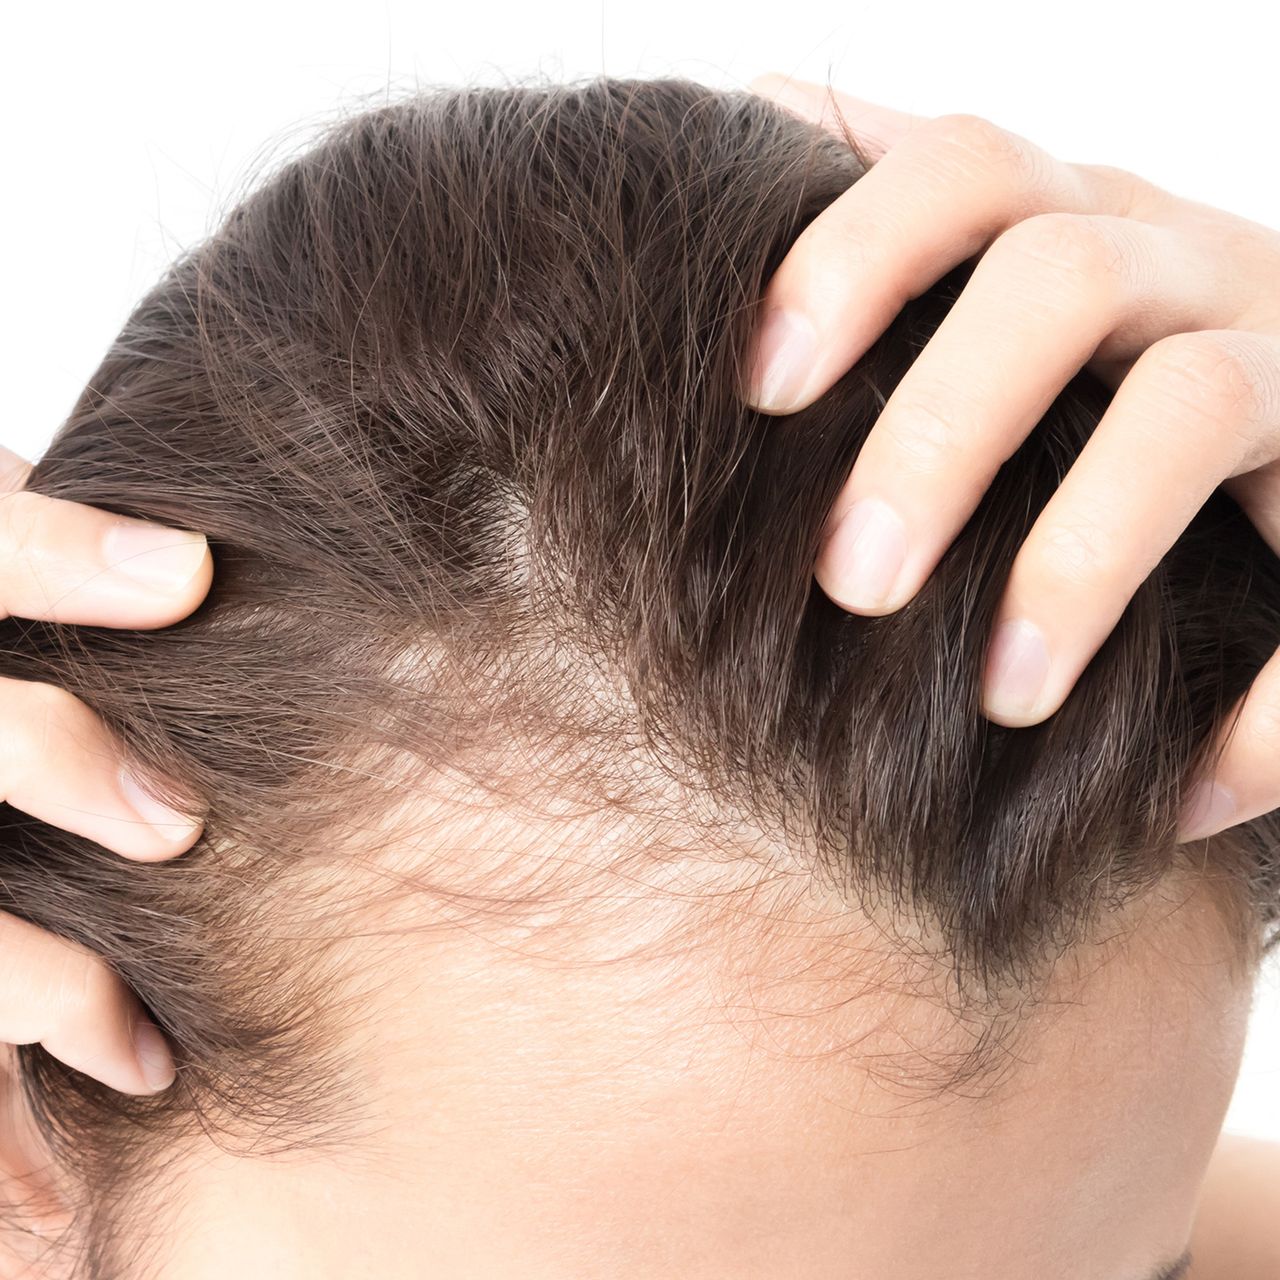 Machen dicke haare dünner Tipps :Haare